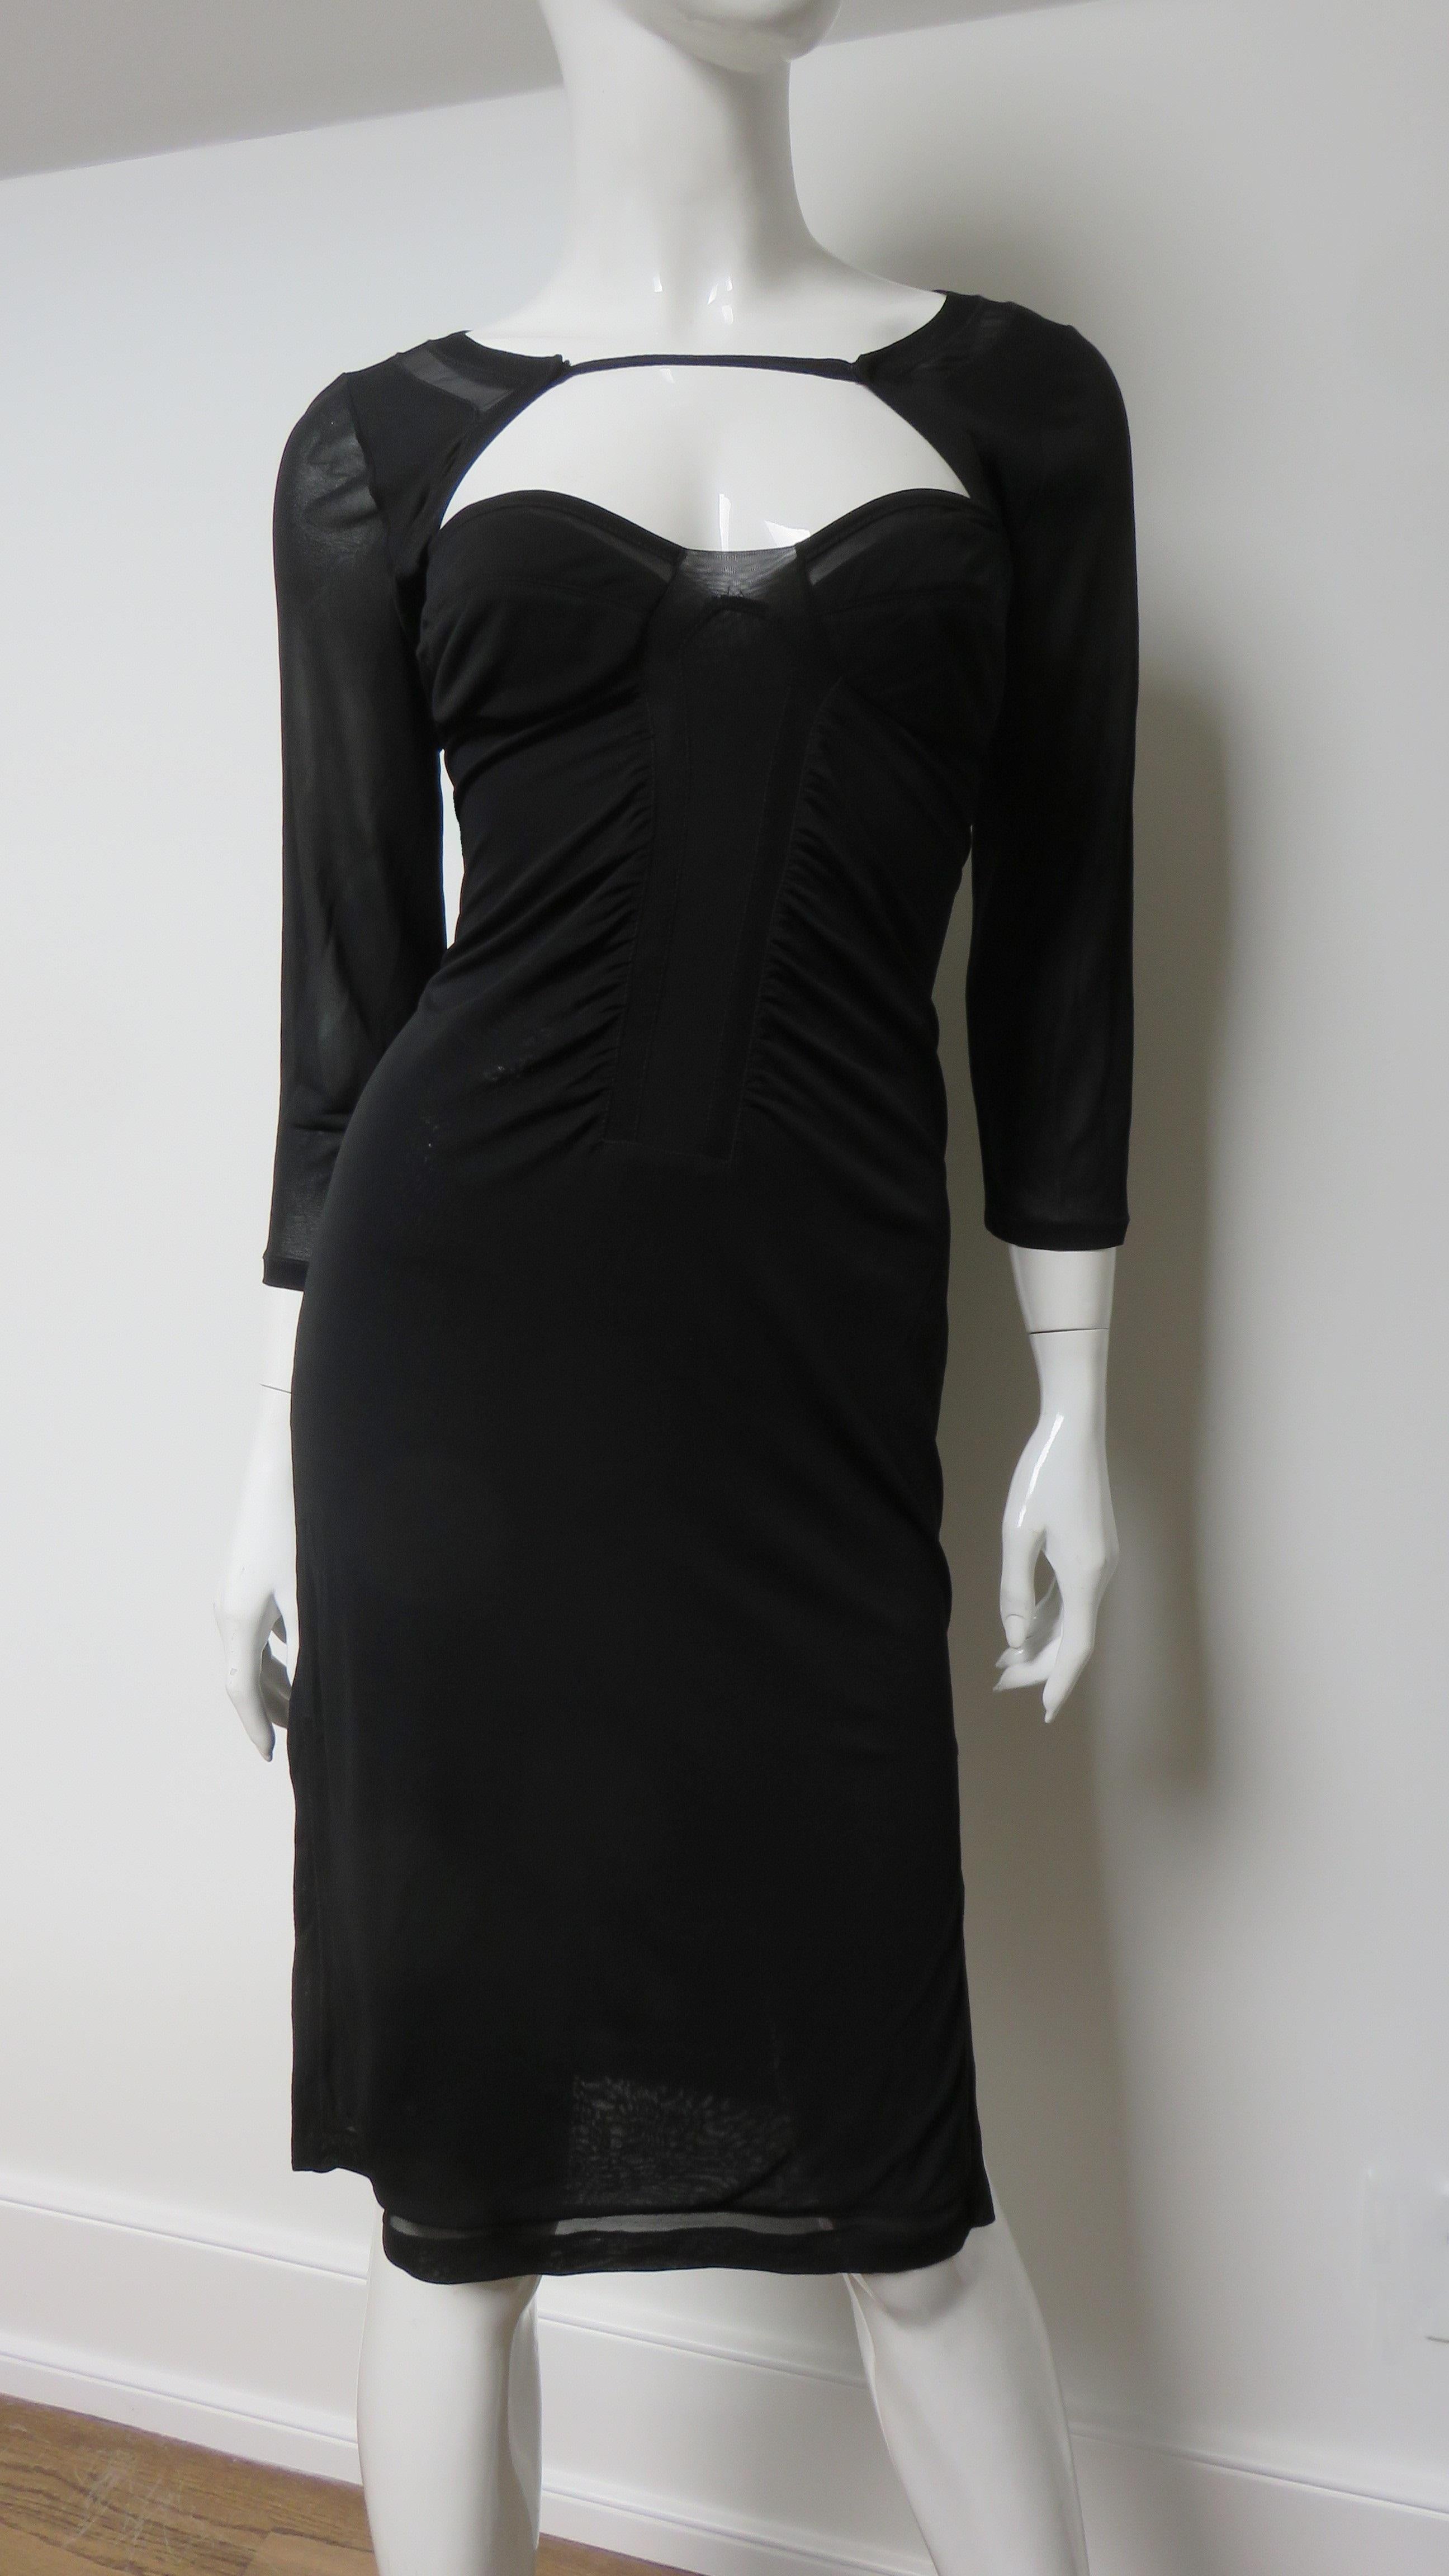 Ein fabelhaftes schwarzes Kleid aus feiner Stretch-Seide von Tom Ford für Gucci. Es hat 3/4-lange Ärmel, Schlitze am Saum und ein feines Band, das über die obere Brust und den Rücken verläuft. Am Saum und an der Brust befindet sich ein bandgroßer,